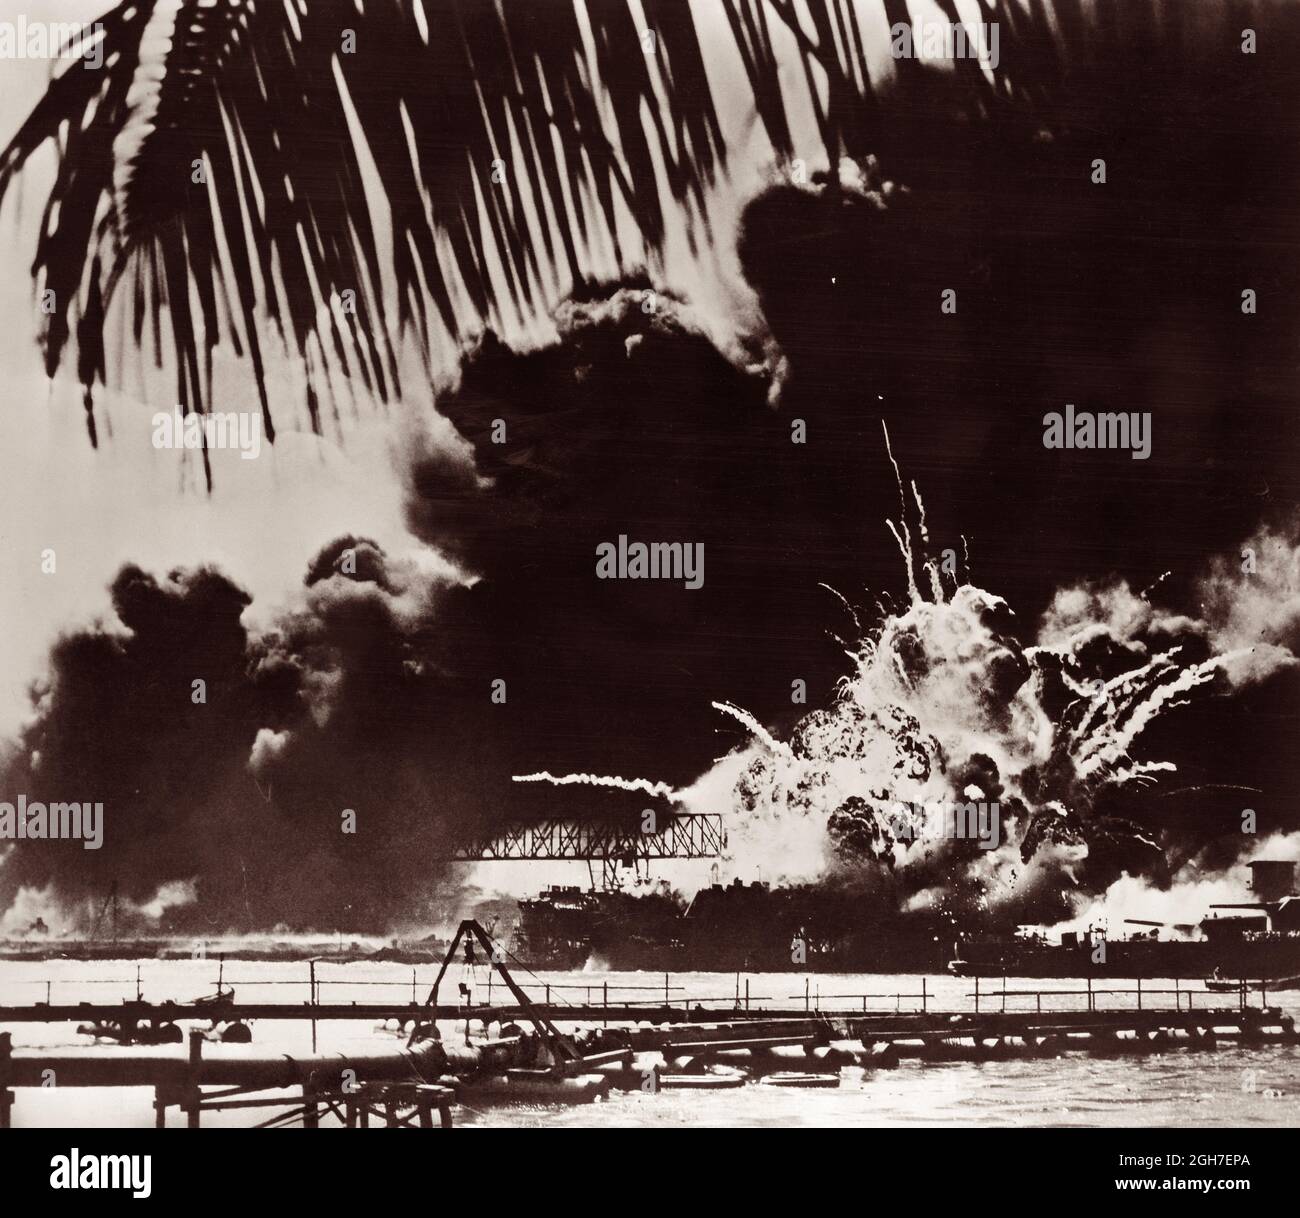 USS Shaw esplodere dopo che la sua rivista Forward è stata detonata dal fuoco infuriato durante l'attacco a sorpresa giapponese a Pearl Harbor il 7 dicembre 1941. Foto Stock